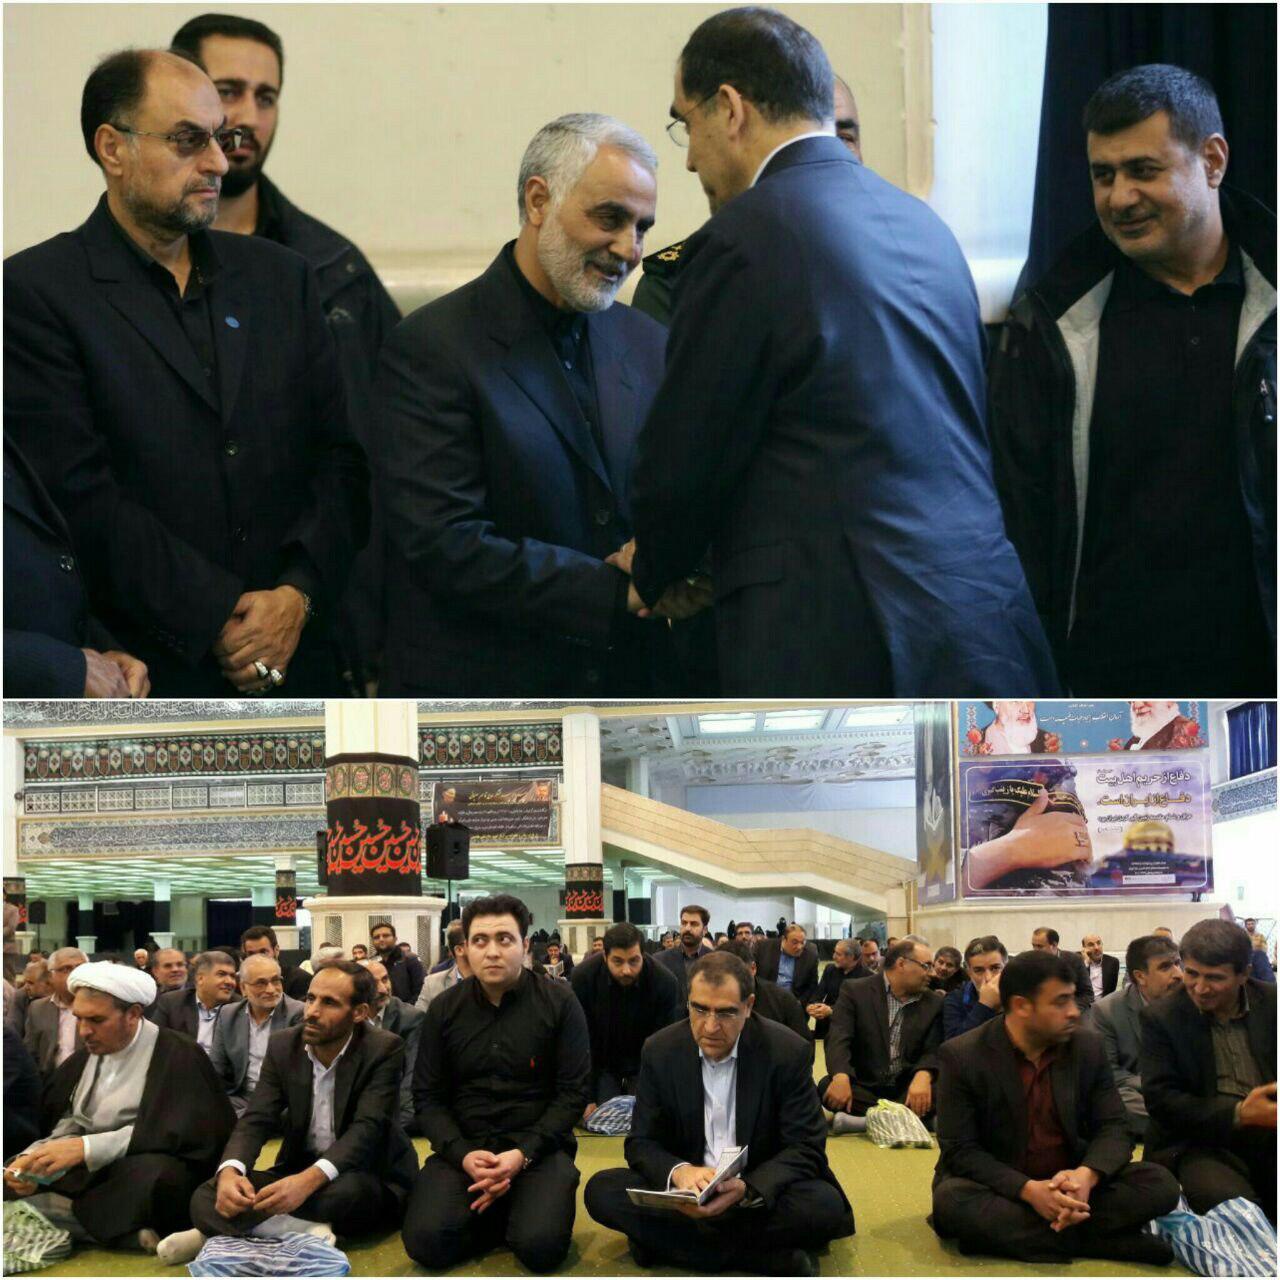 حضور وزیر بهداشت در مراسم ترحیم پدر سردار سلیمانی/عکس